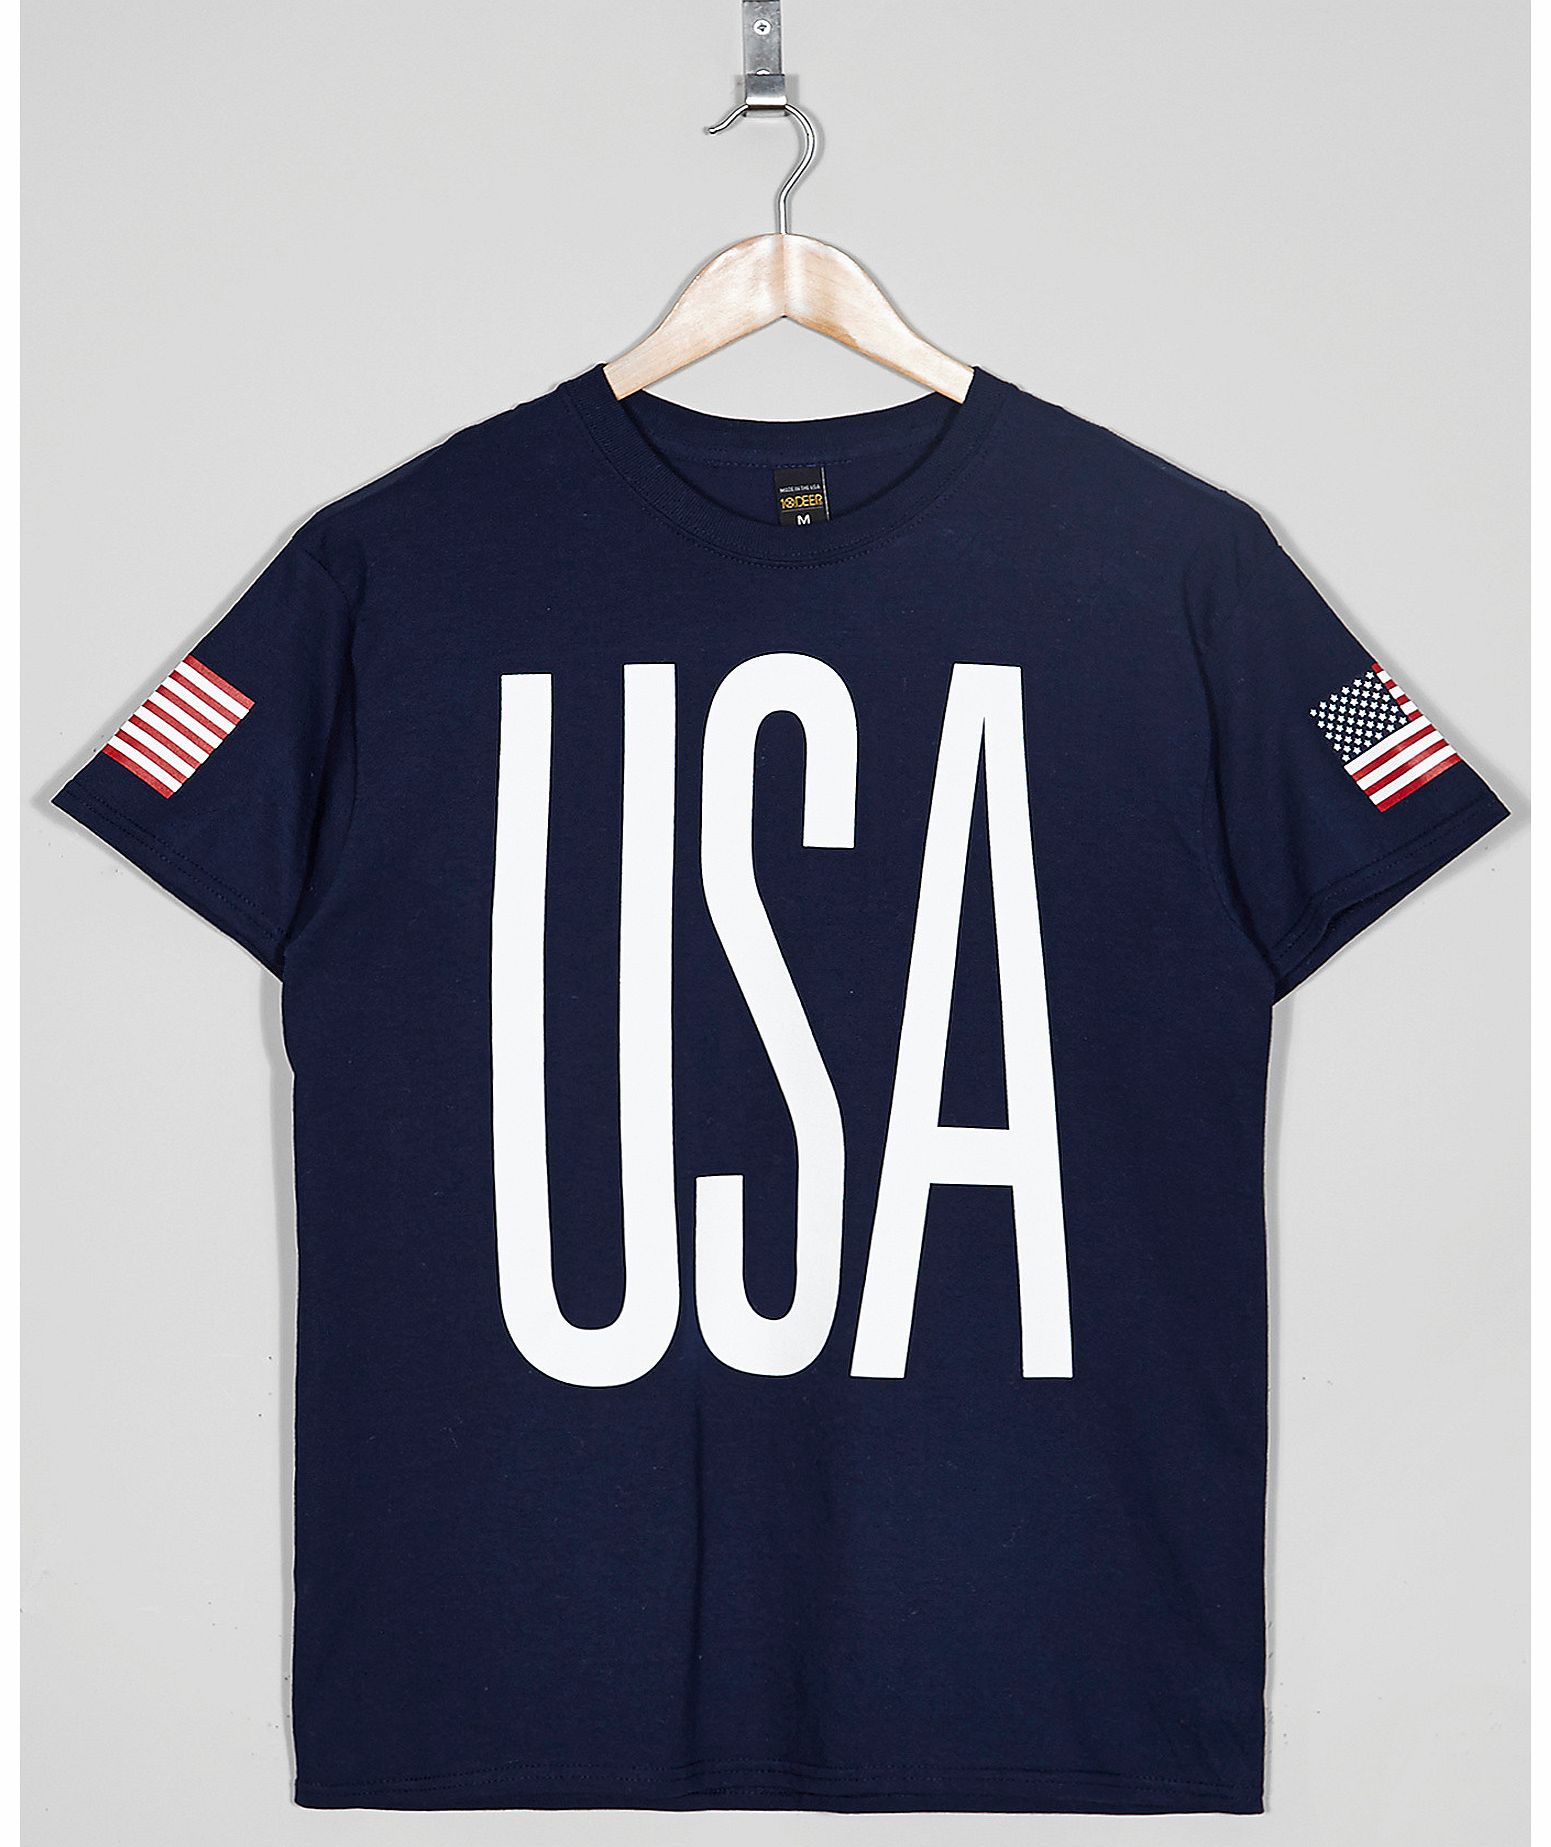 10 DEEP USA 84 T-Shirt